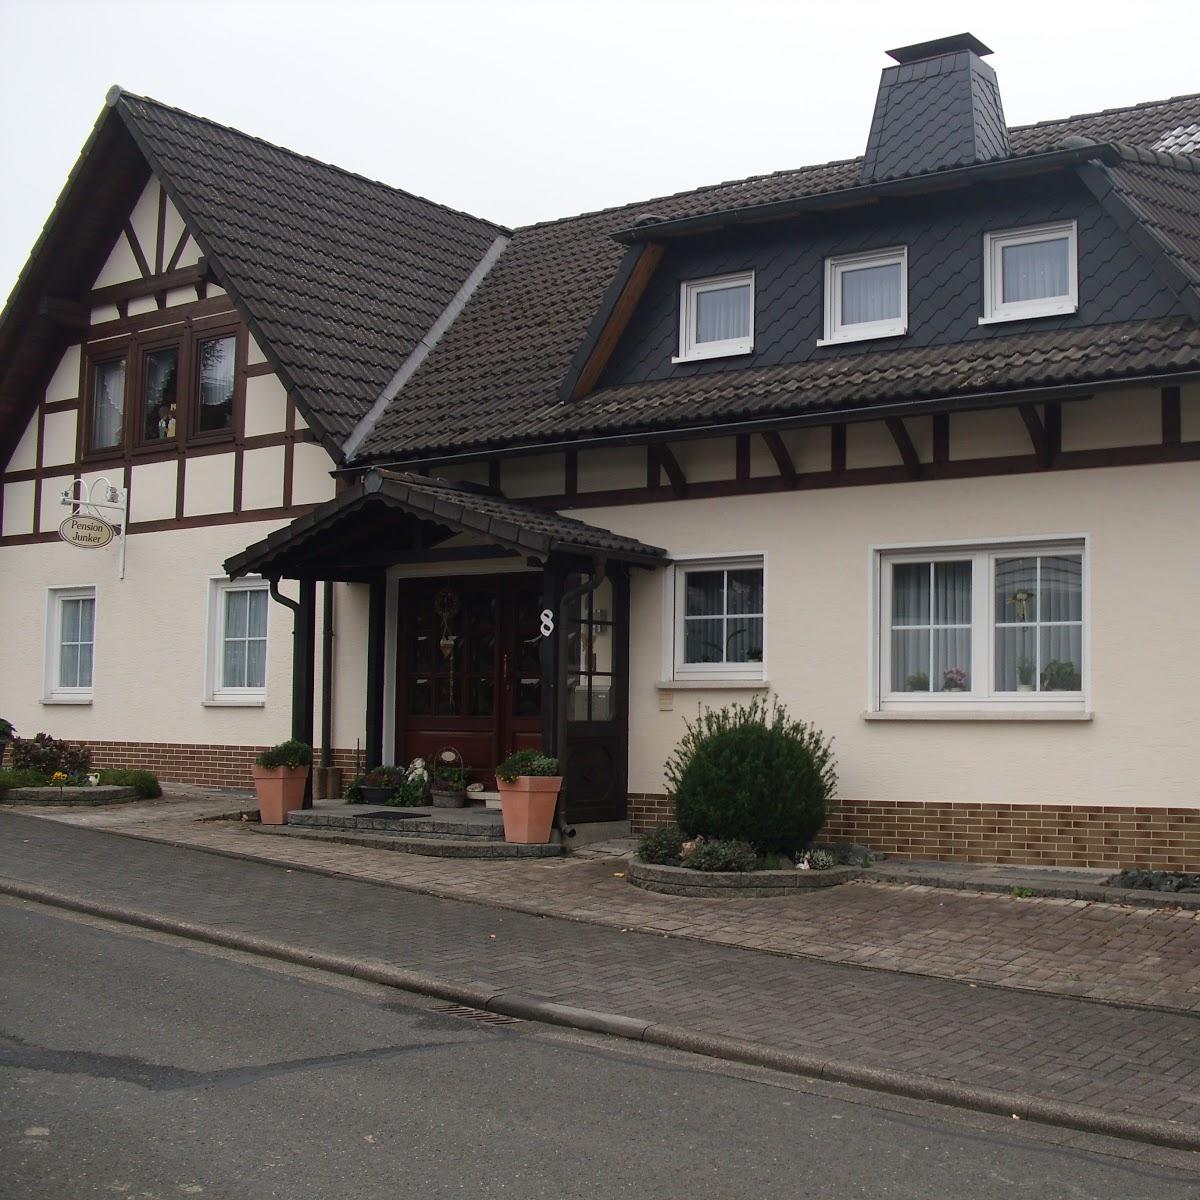 Restaurant "Pension Junker" in Breidenbach